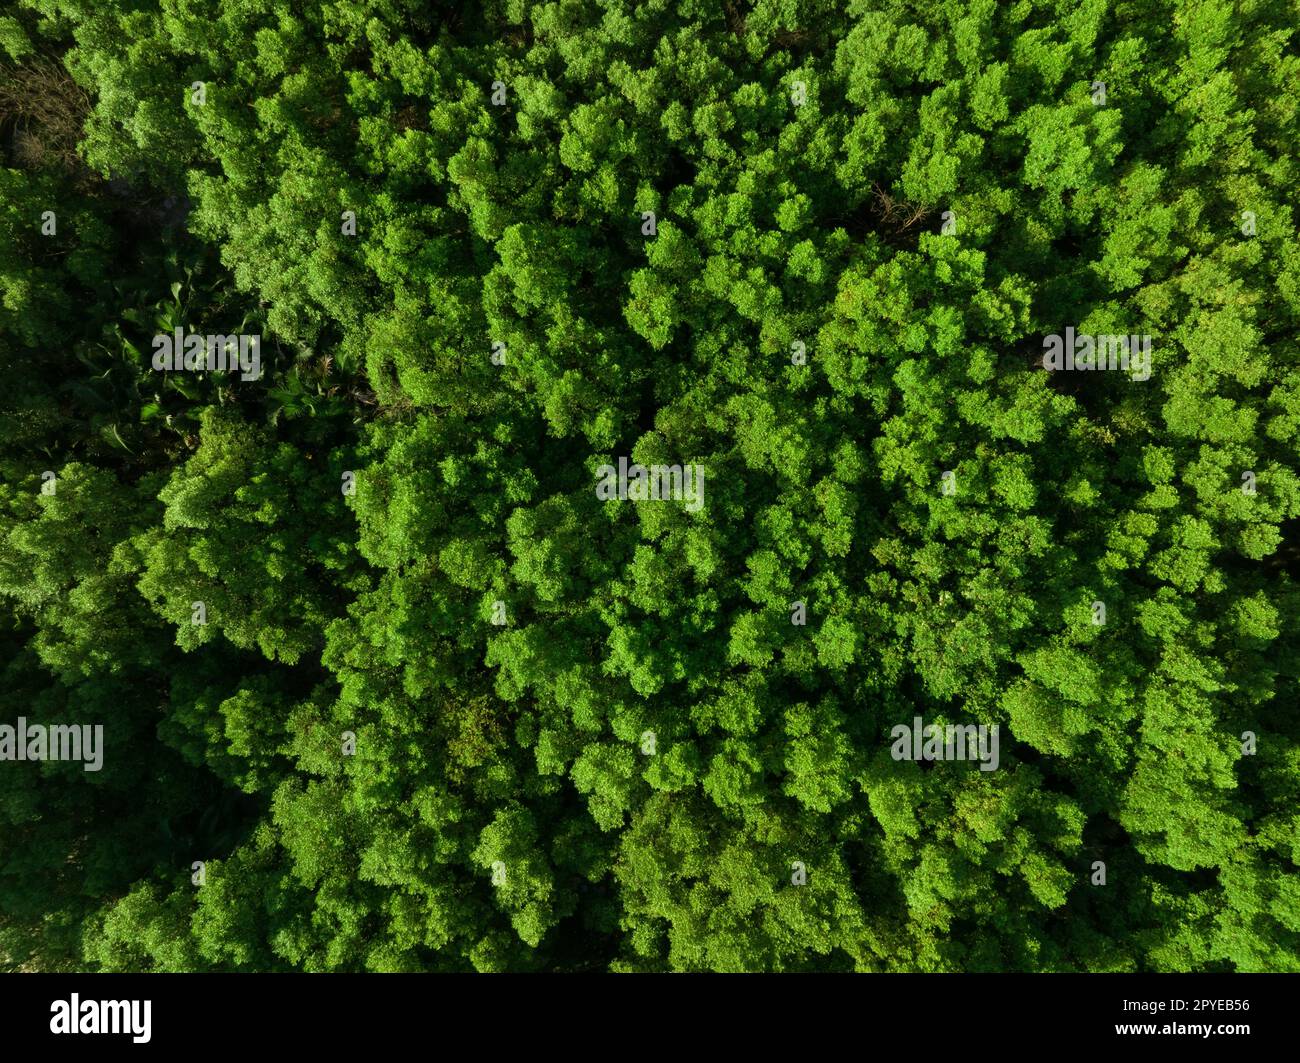 Vue aérienne de dessus de la forêt de mangroves. La vue de drone des arbres denses de mangrove verte capture le CO2. Les arbres verts sont à l'origine du concept de neutralité carbone et de zéro émission nette. Environnement vert durable. Banque D'Images